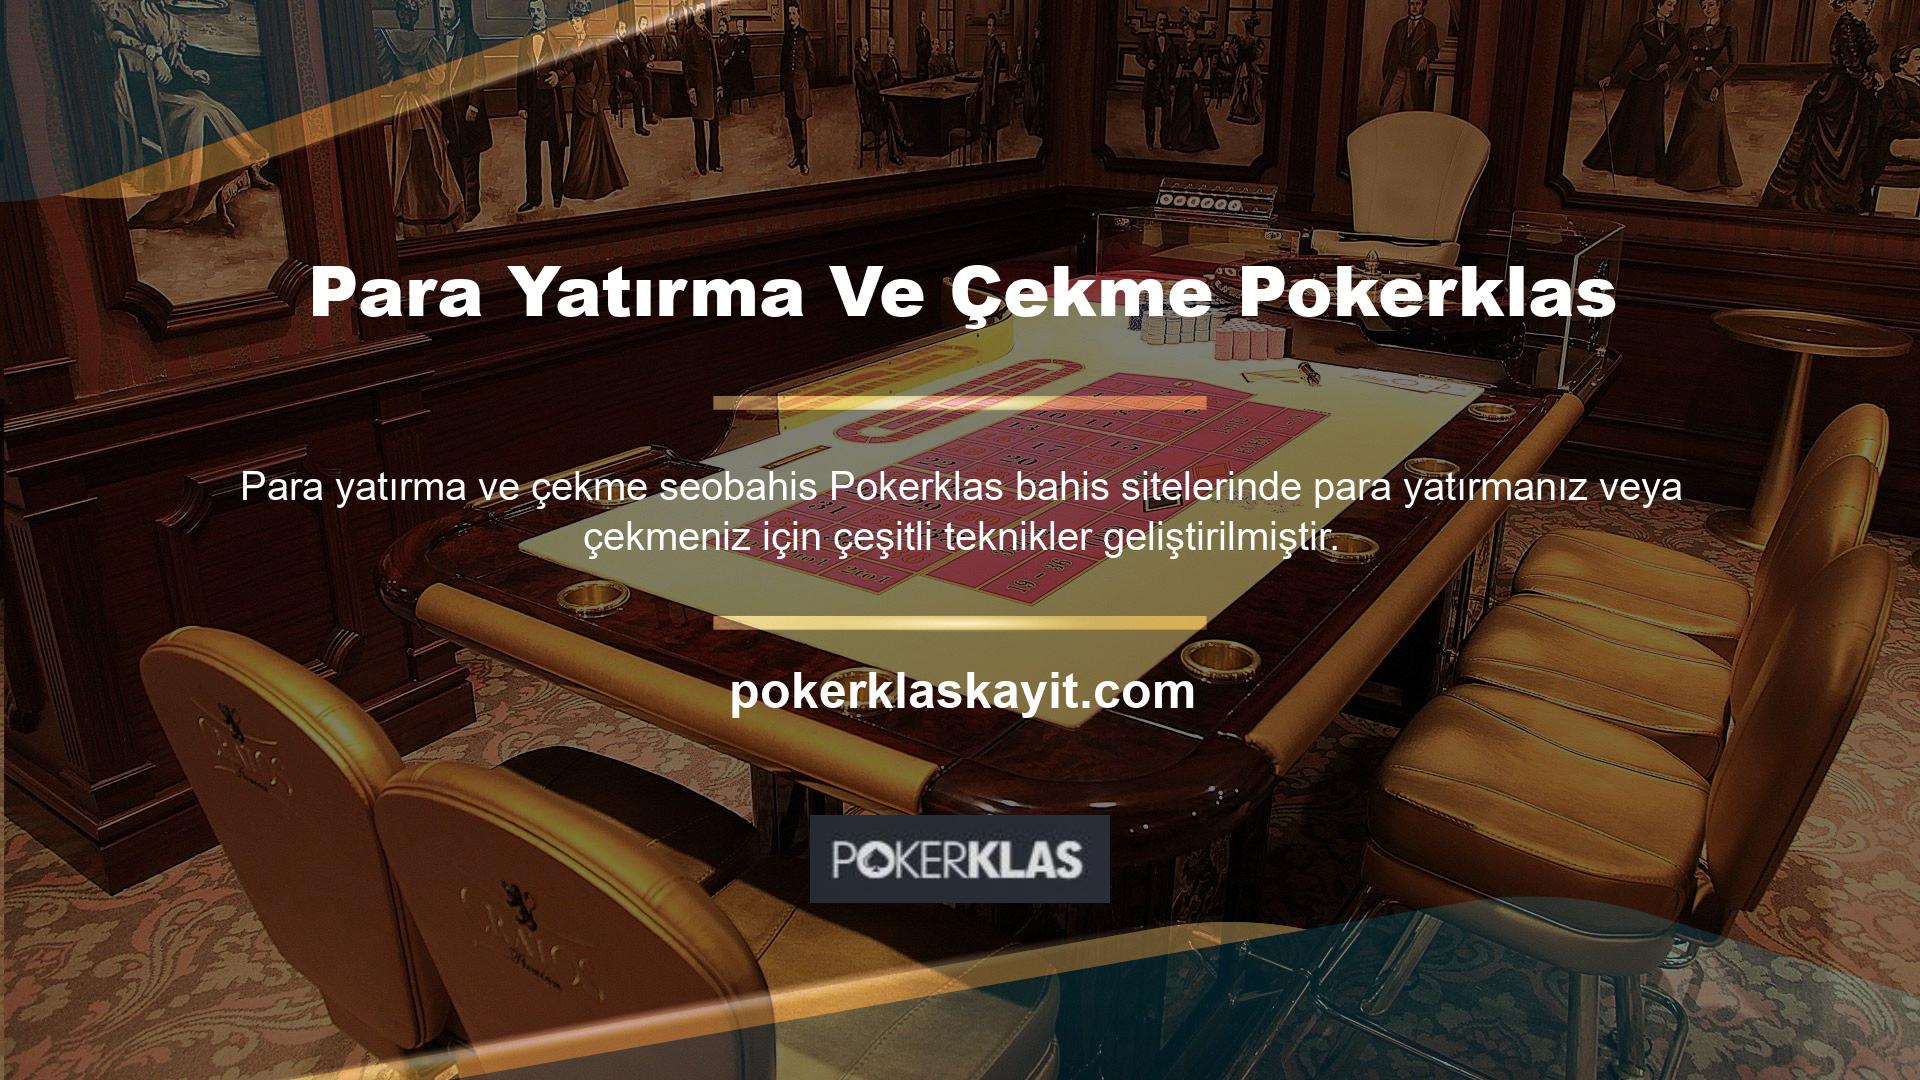 Bilinen tekniklere ek olarak Pokerklas web sitesi, her kullanıcının kendisi için en uygun yöntemi seçmesine olanak tanıyan özel alternatifler de sunmaktadır